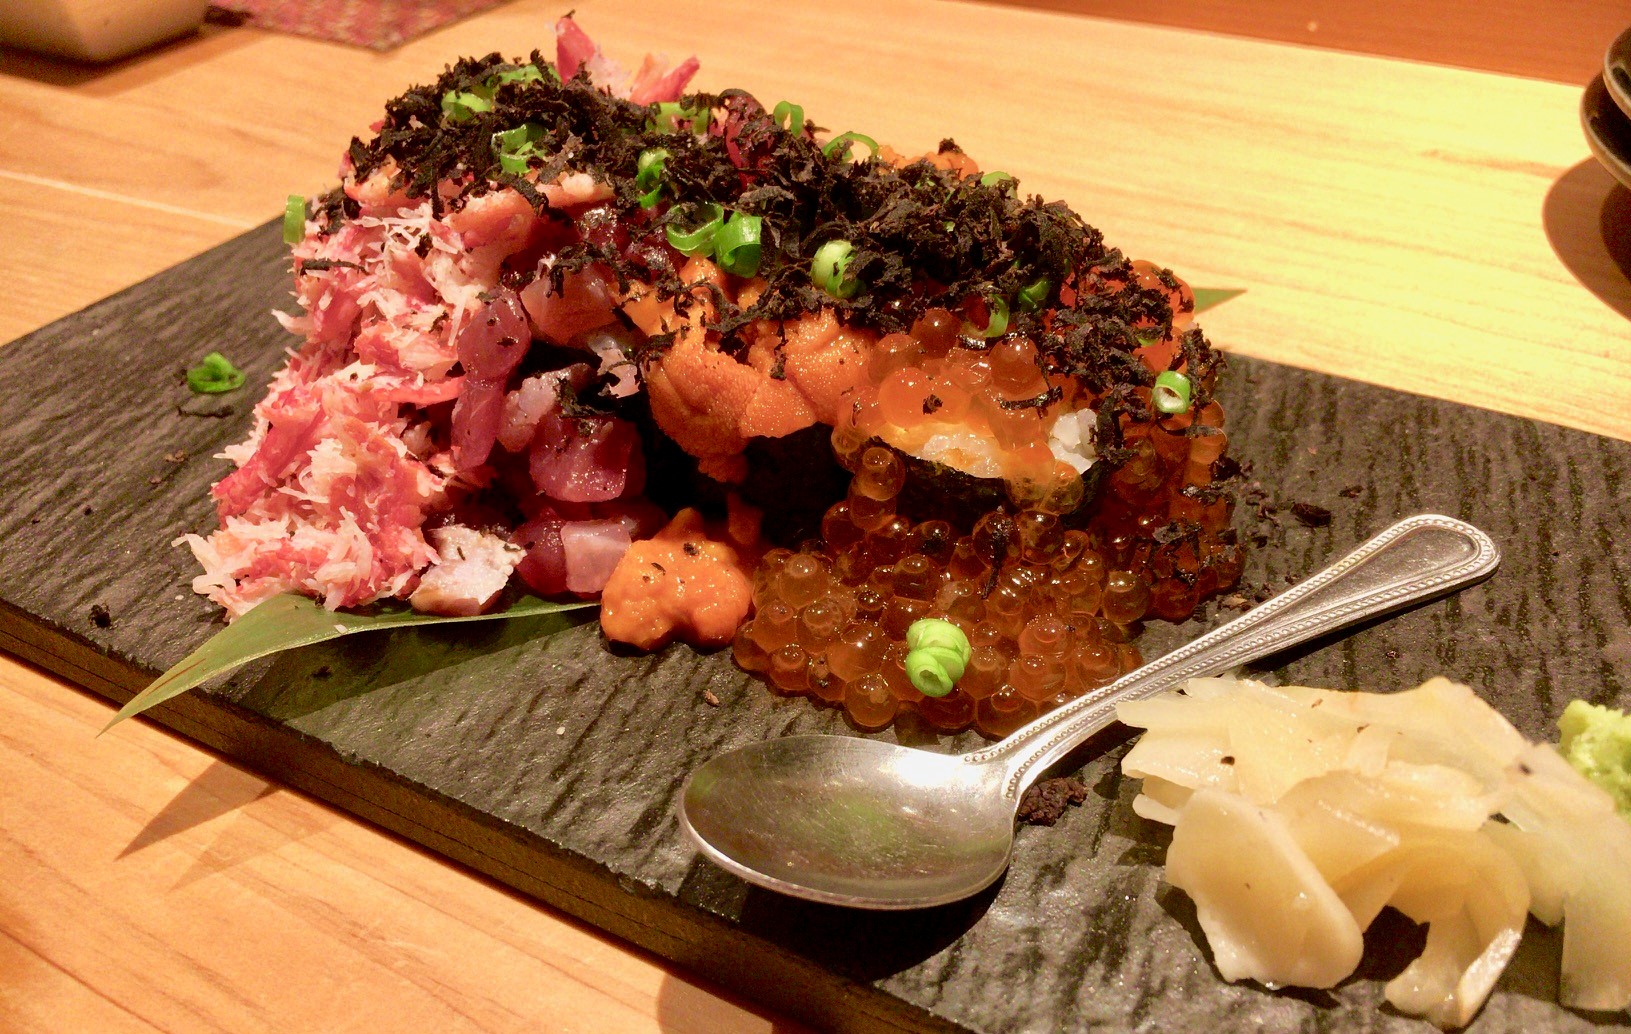 宇田川紫扇のこぼれ寿司の画像